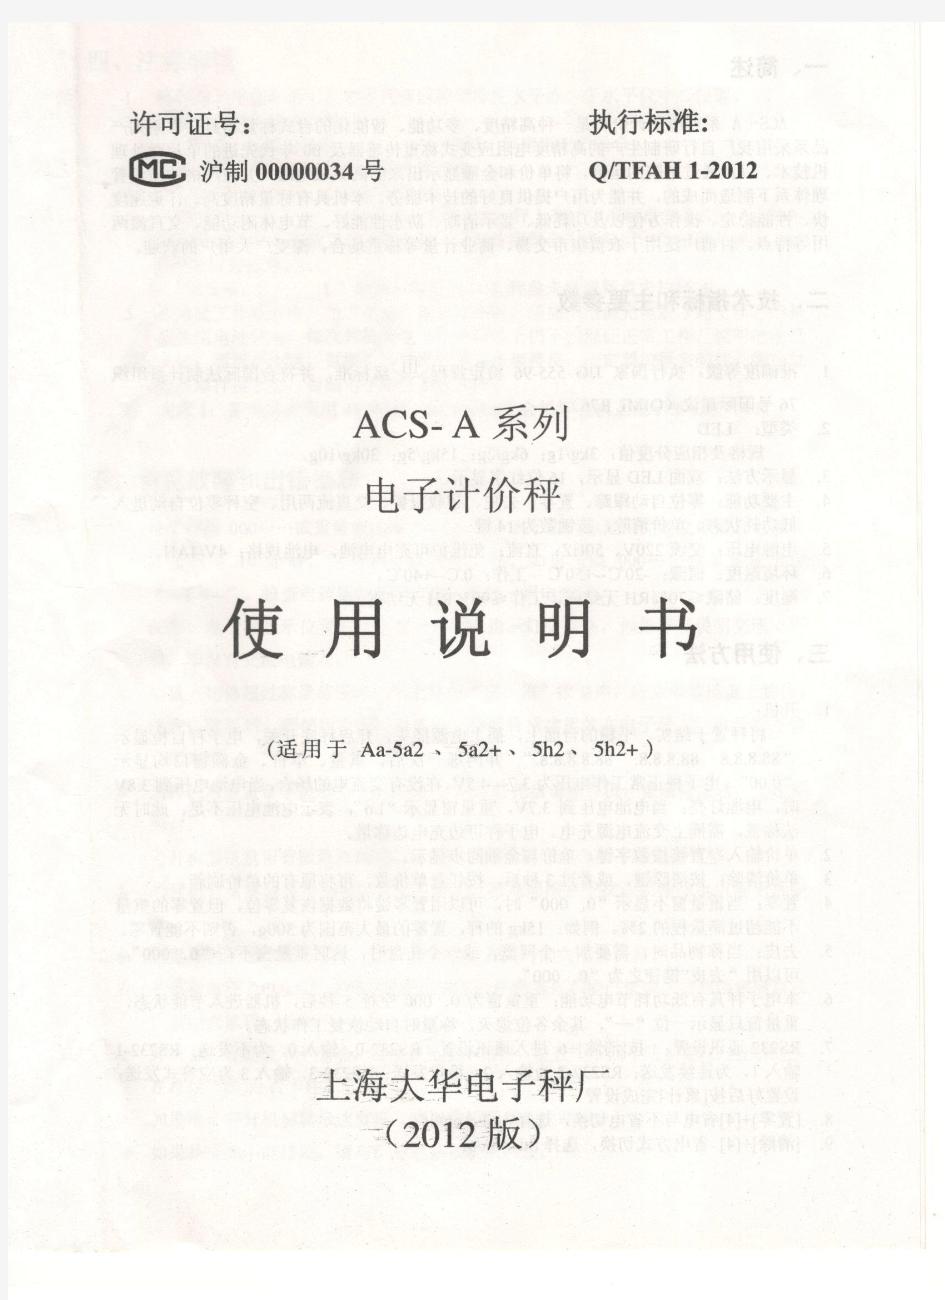 上海大华-电子计价秤-ACS-A系列-使用说明书